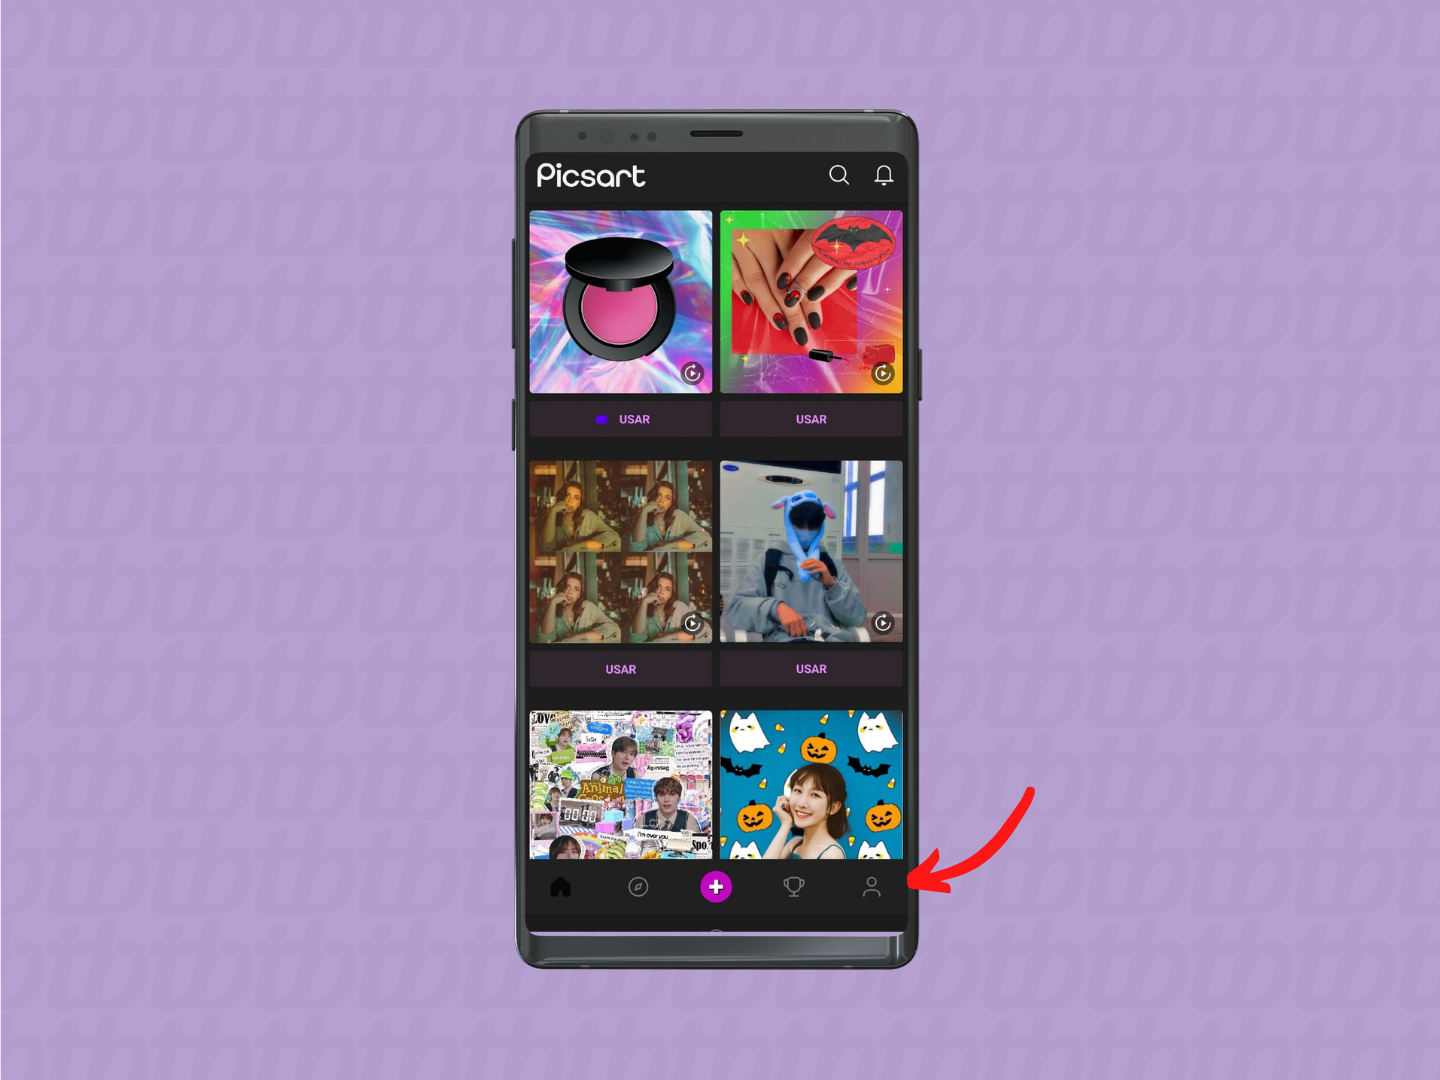 screenshot da tela inicial do aplicativo picsart com destaque para o ícone do boneco